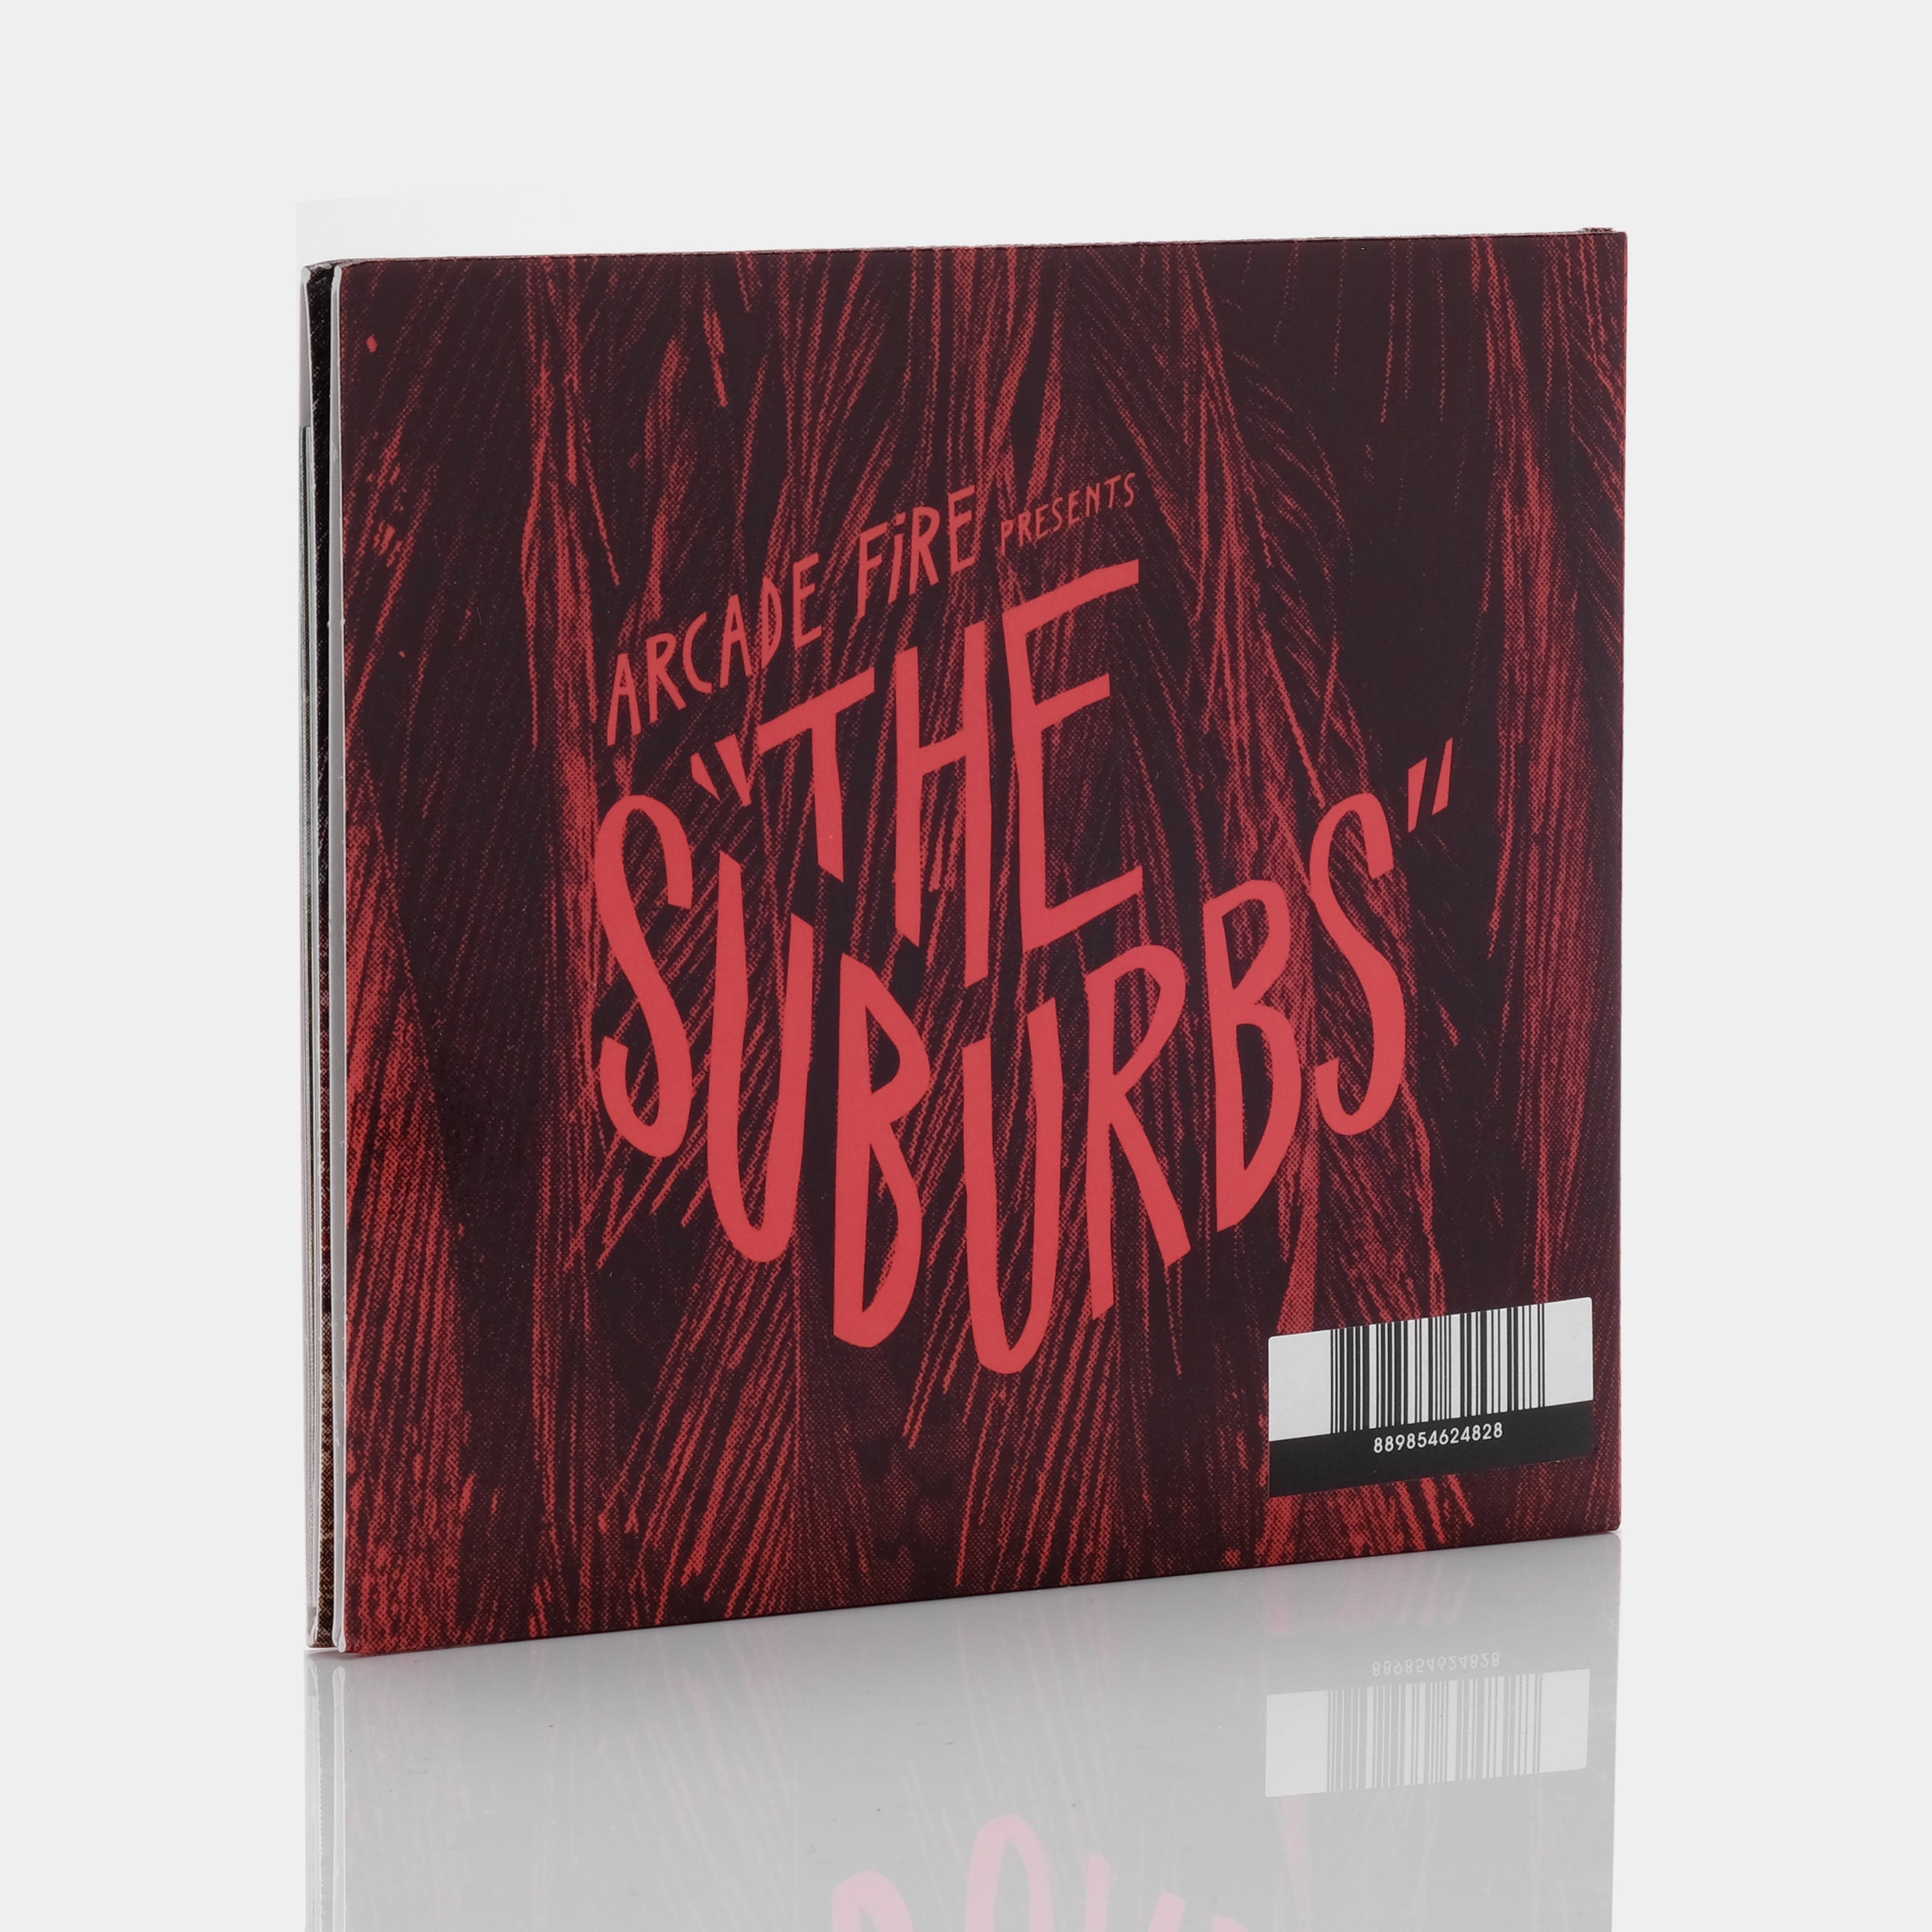 Arcade Fire - The Suburbs CD